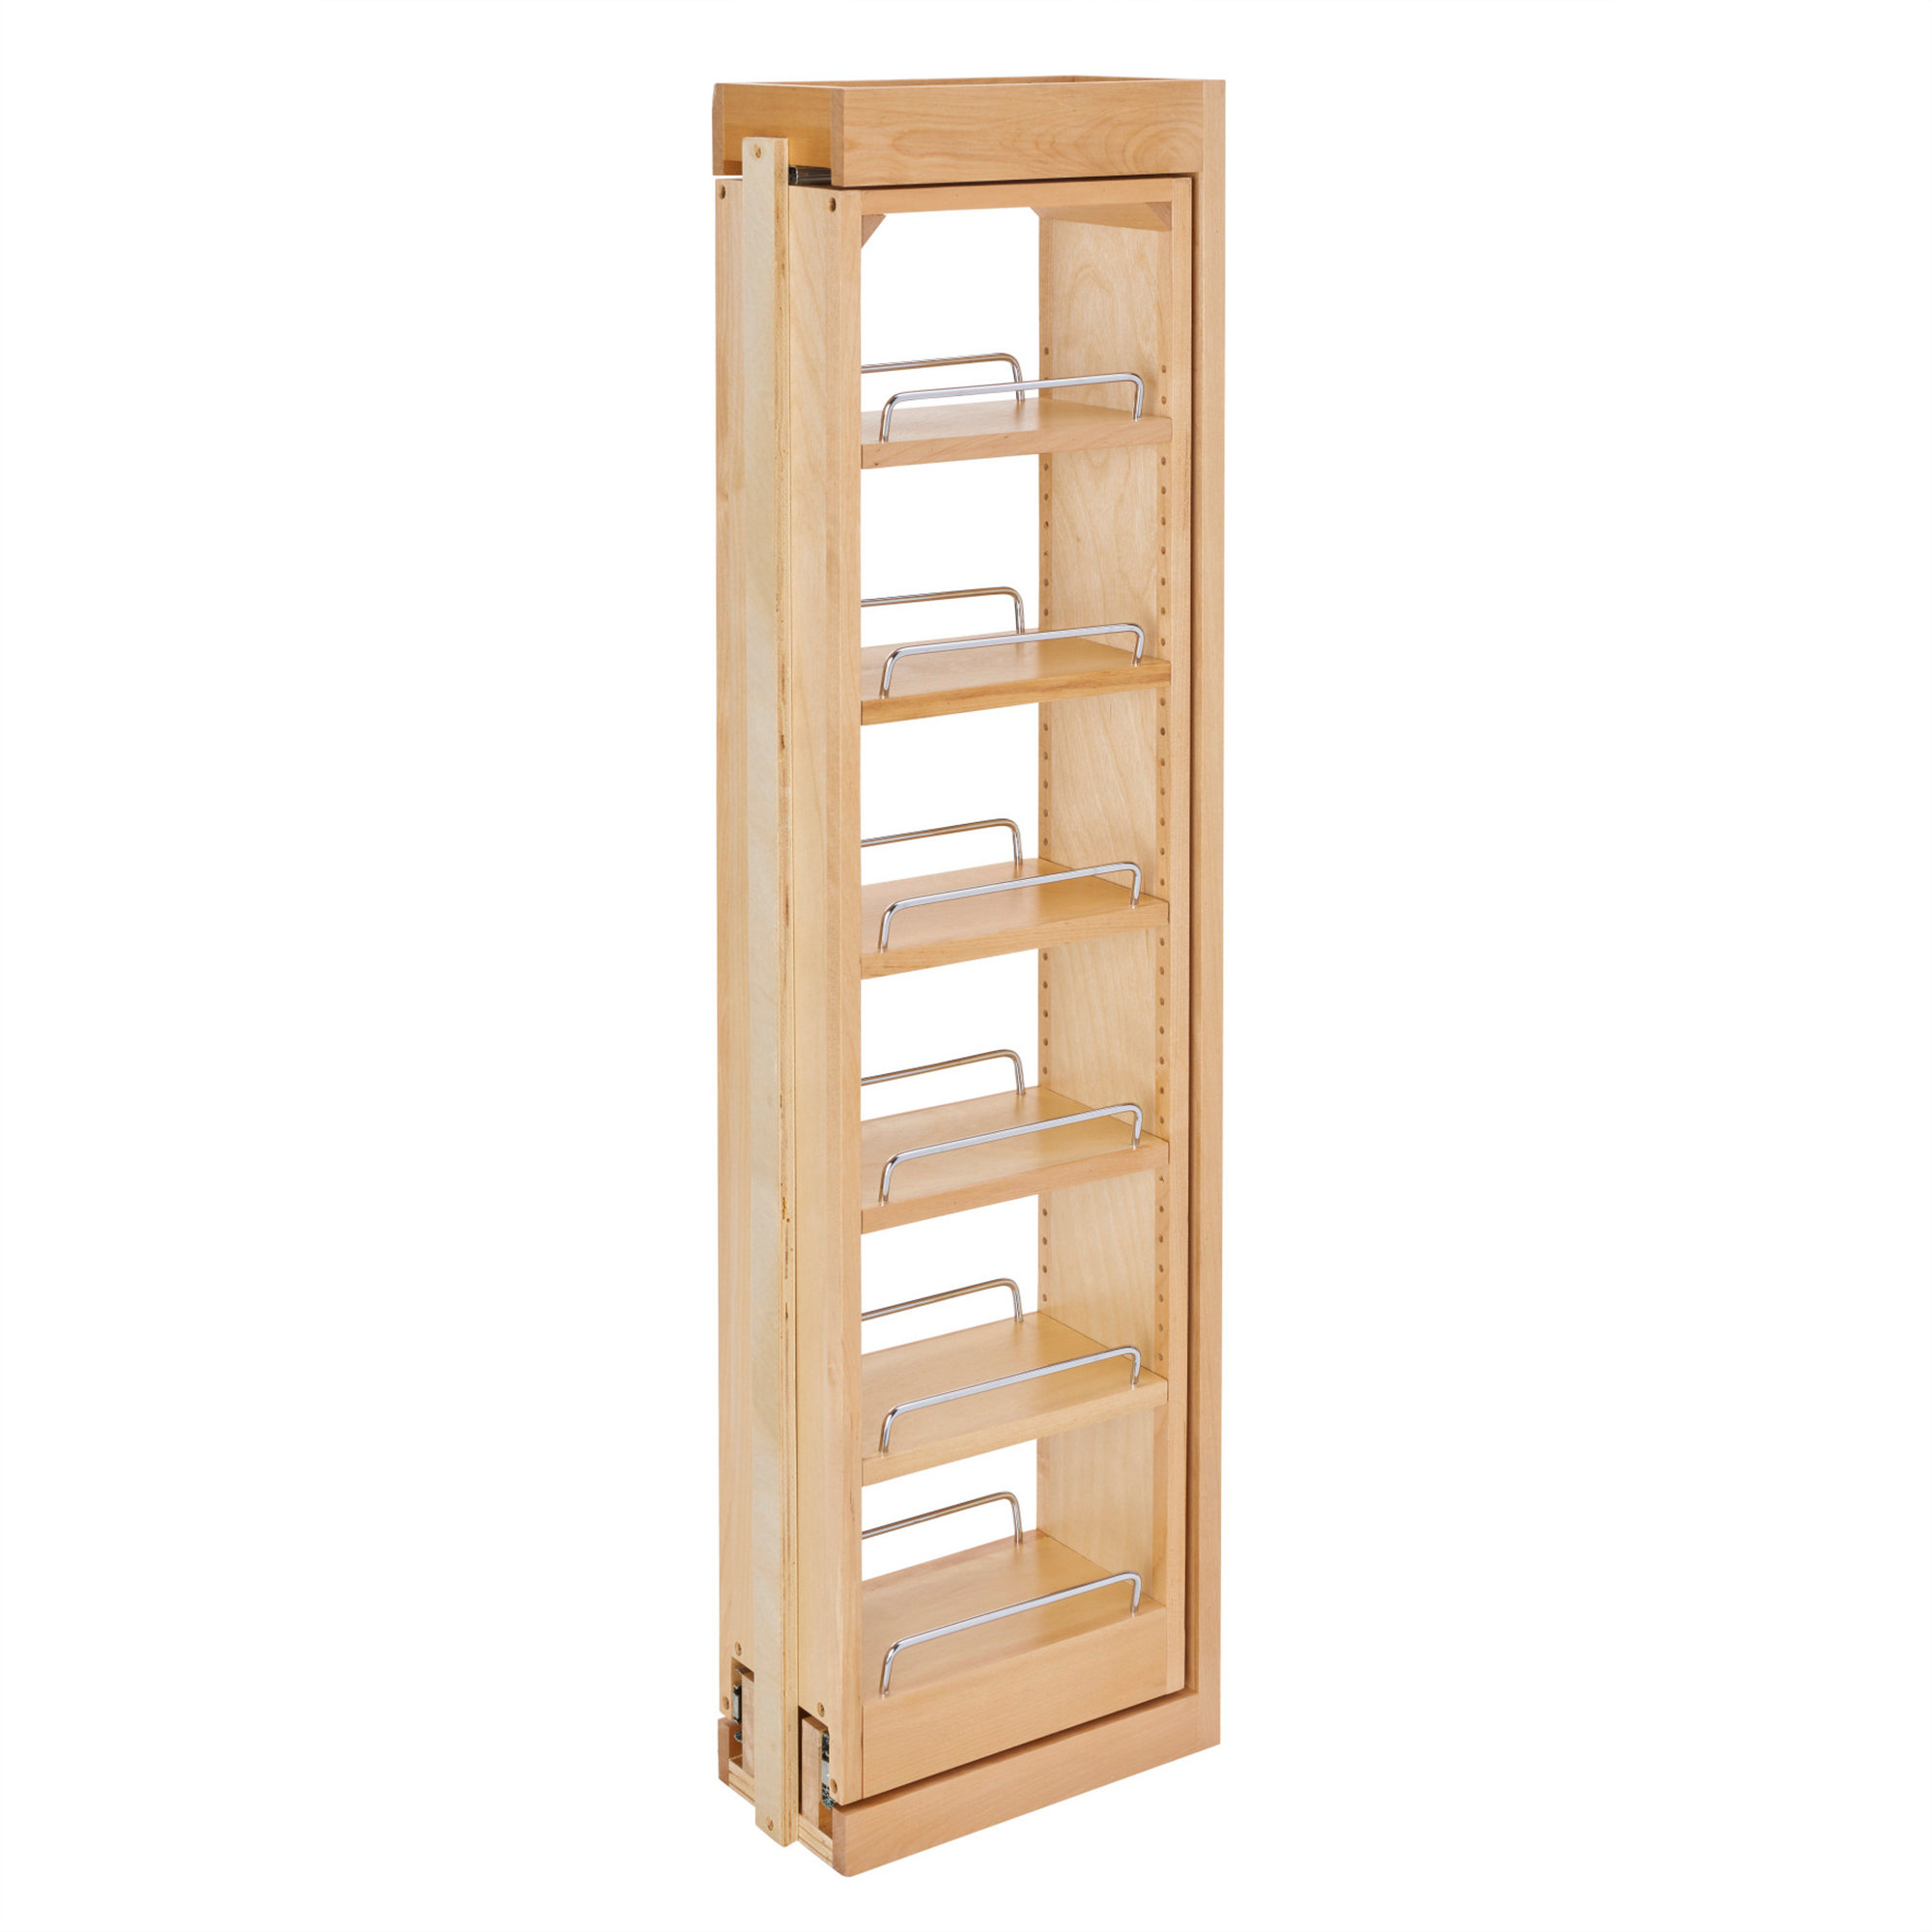 https://assets.wfcdn.com/im/77654700/compr-r85/2457/245749038/rev-a-shelf-pullout-between-cabinet-wall-filler-shelf-storage.jpg